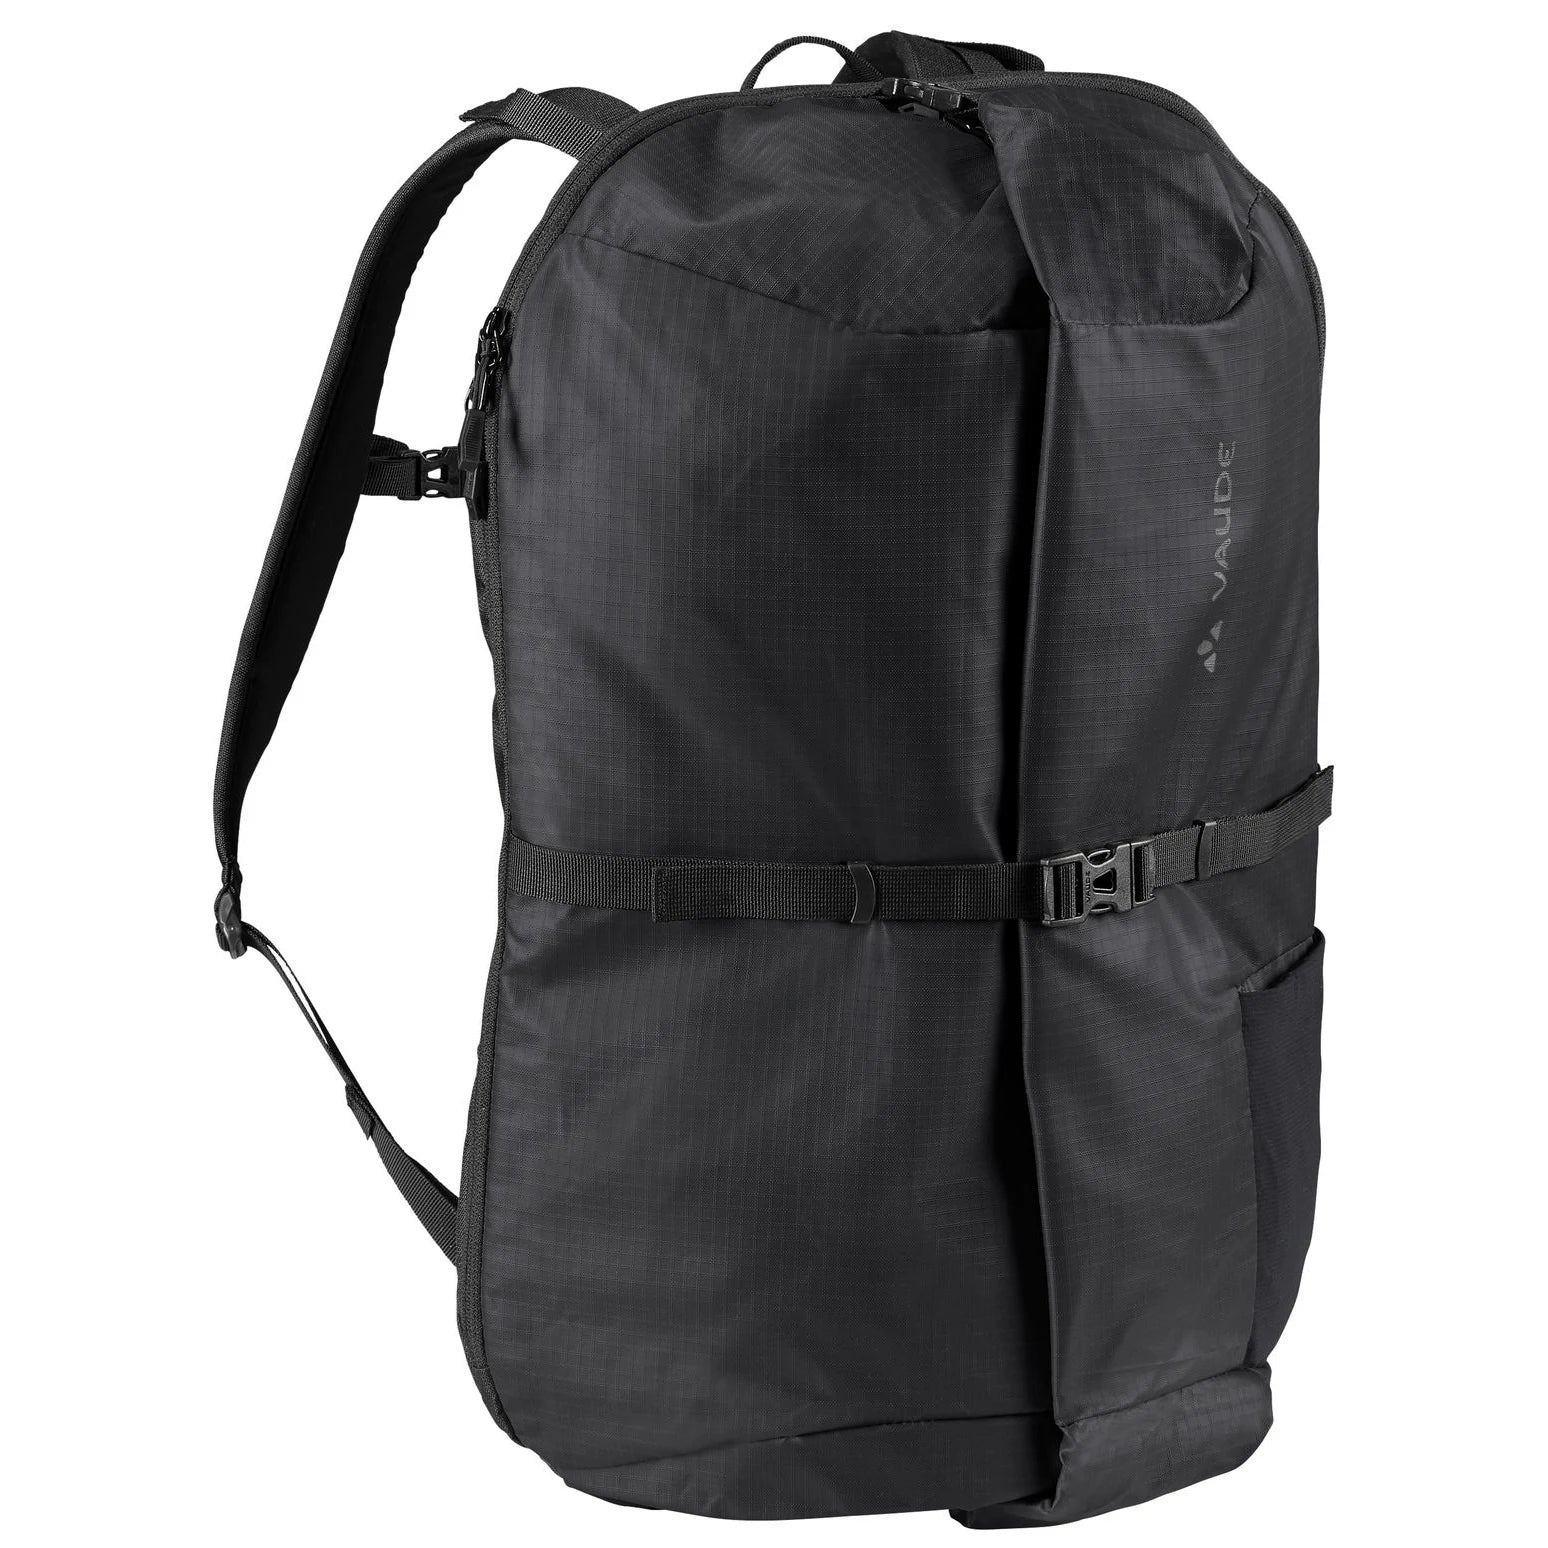 Vaude CityTravel sac à dos de voyage 49 cm - noir